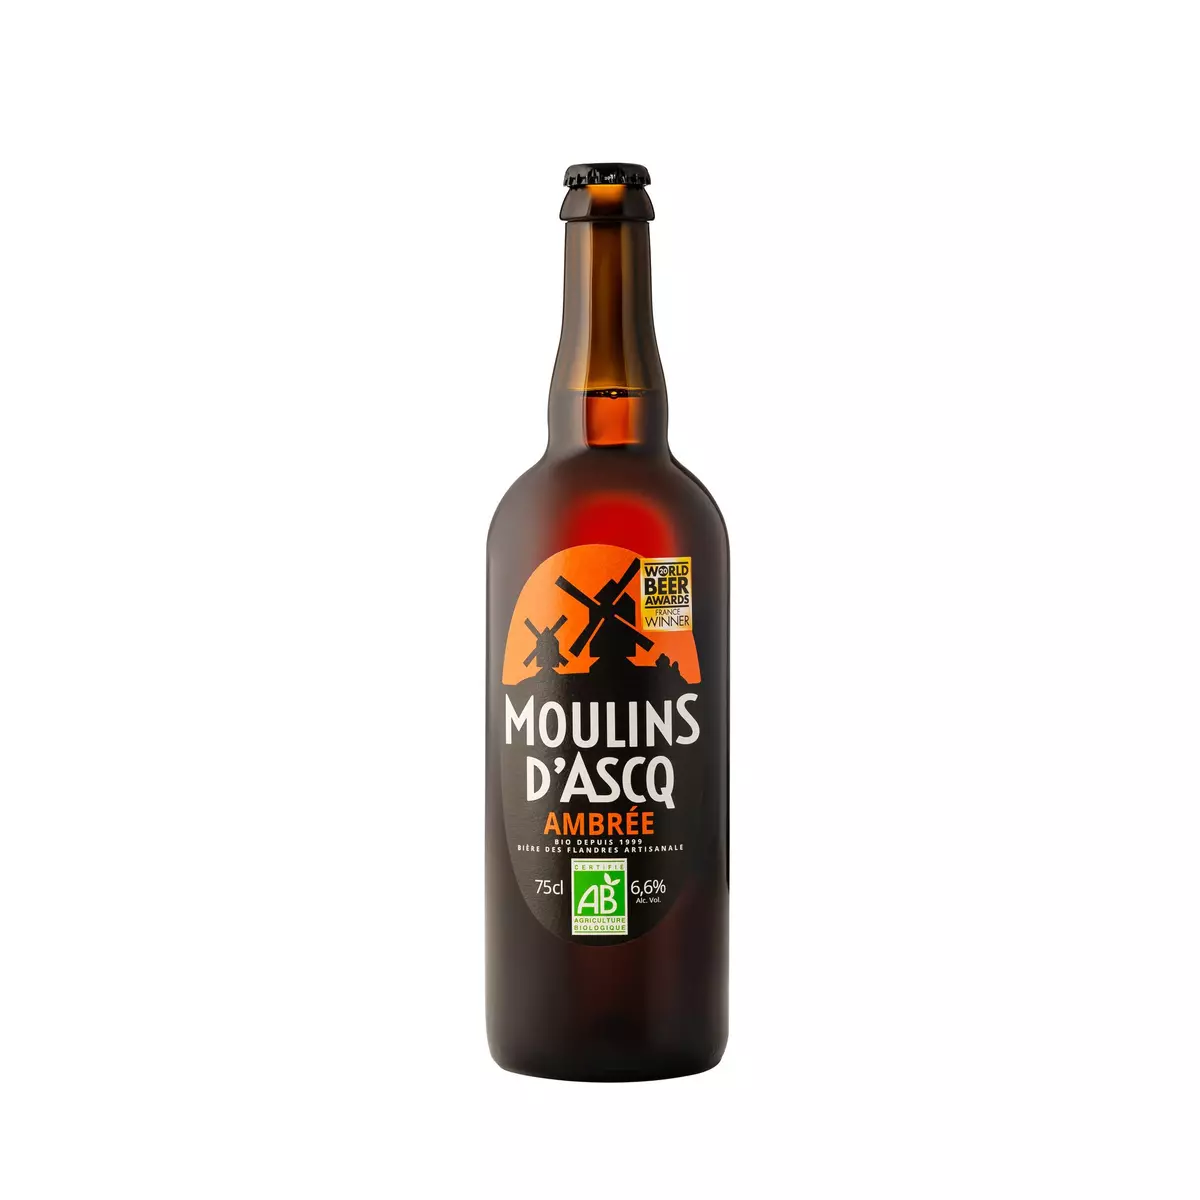 MOULINS D'ASCQ Bière ambrée artisanale des Flandres bio 6,6% 75cl